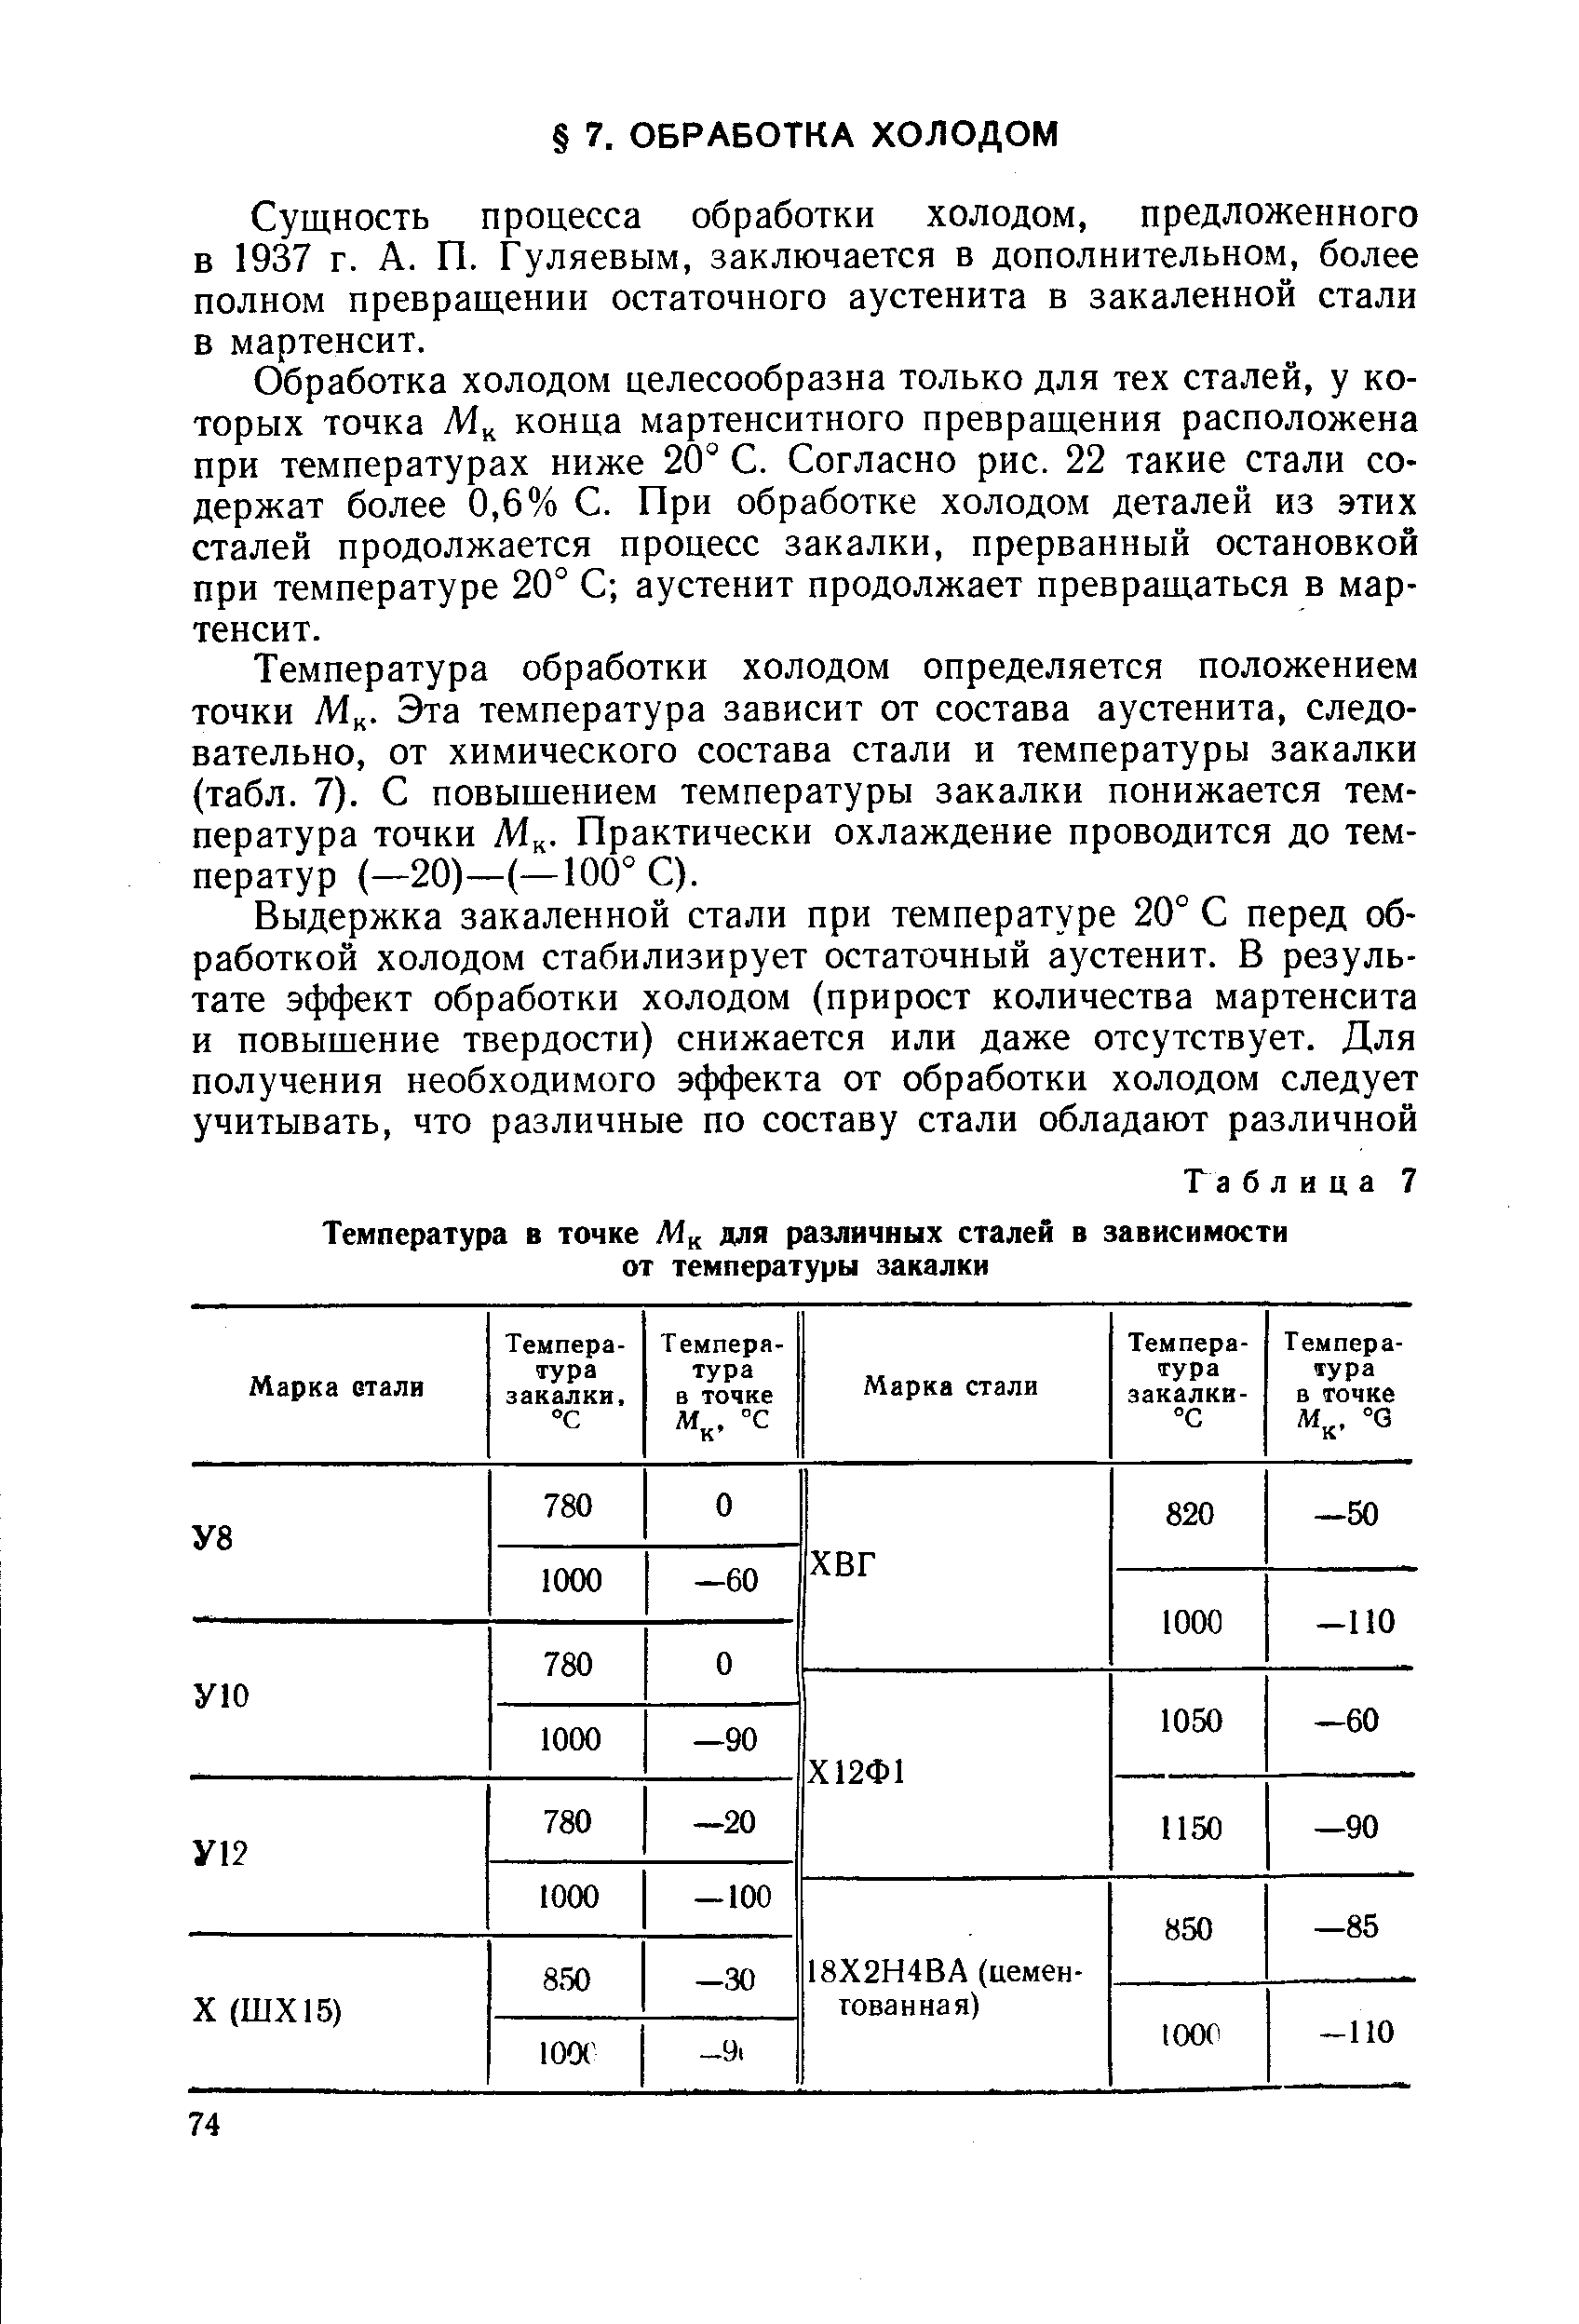 Сущность процесса обработки холодом, предложенного в 1937 г. А. П. Гуляевым, заключается в дополнительном, более полном превращении остаточного аустенита в закаленной стали в мартенсит.
